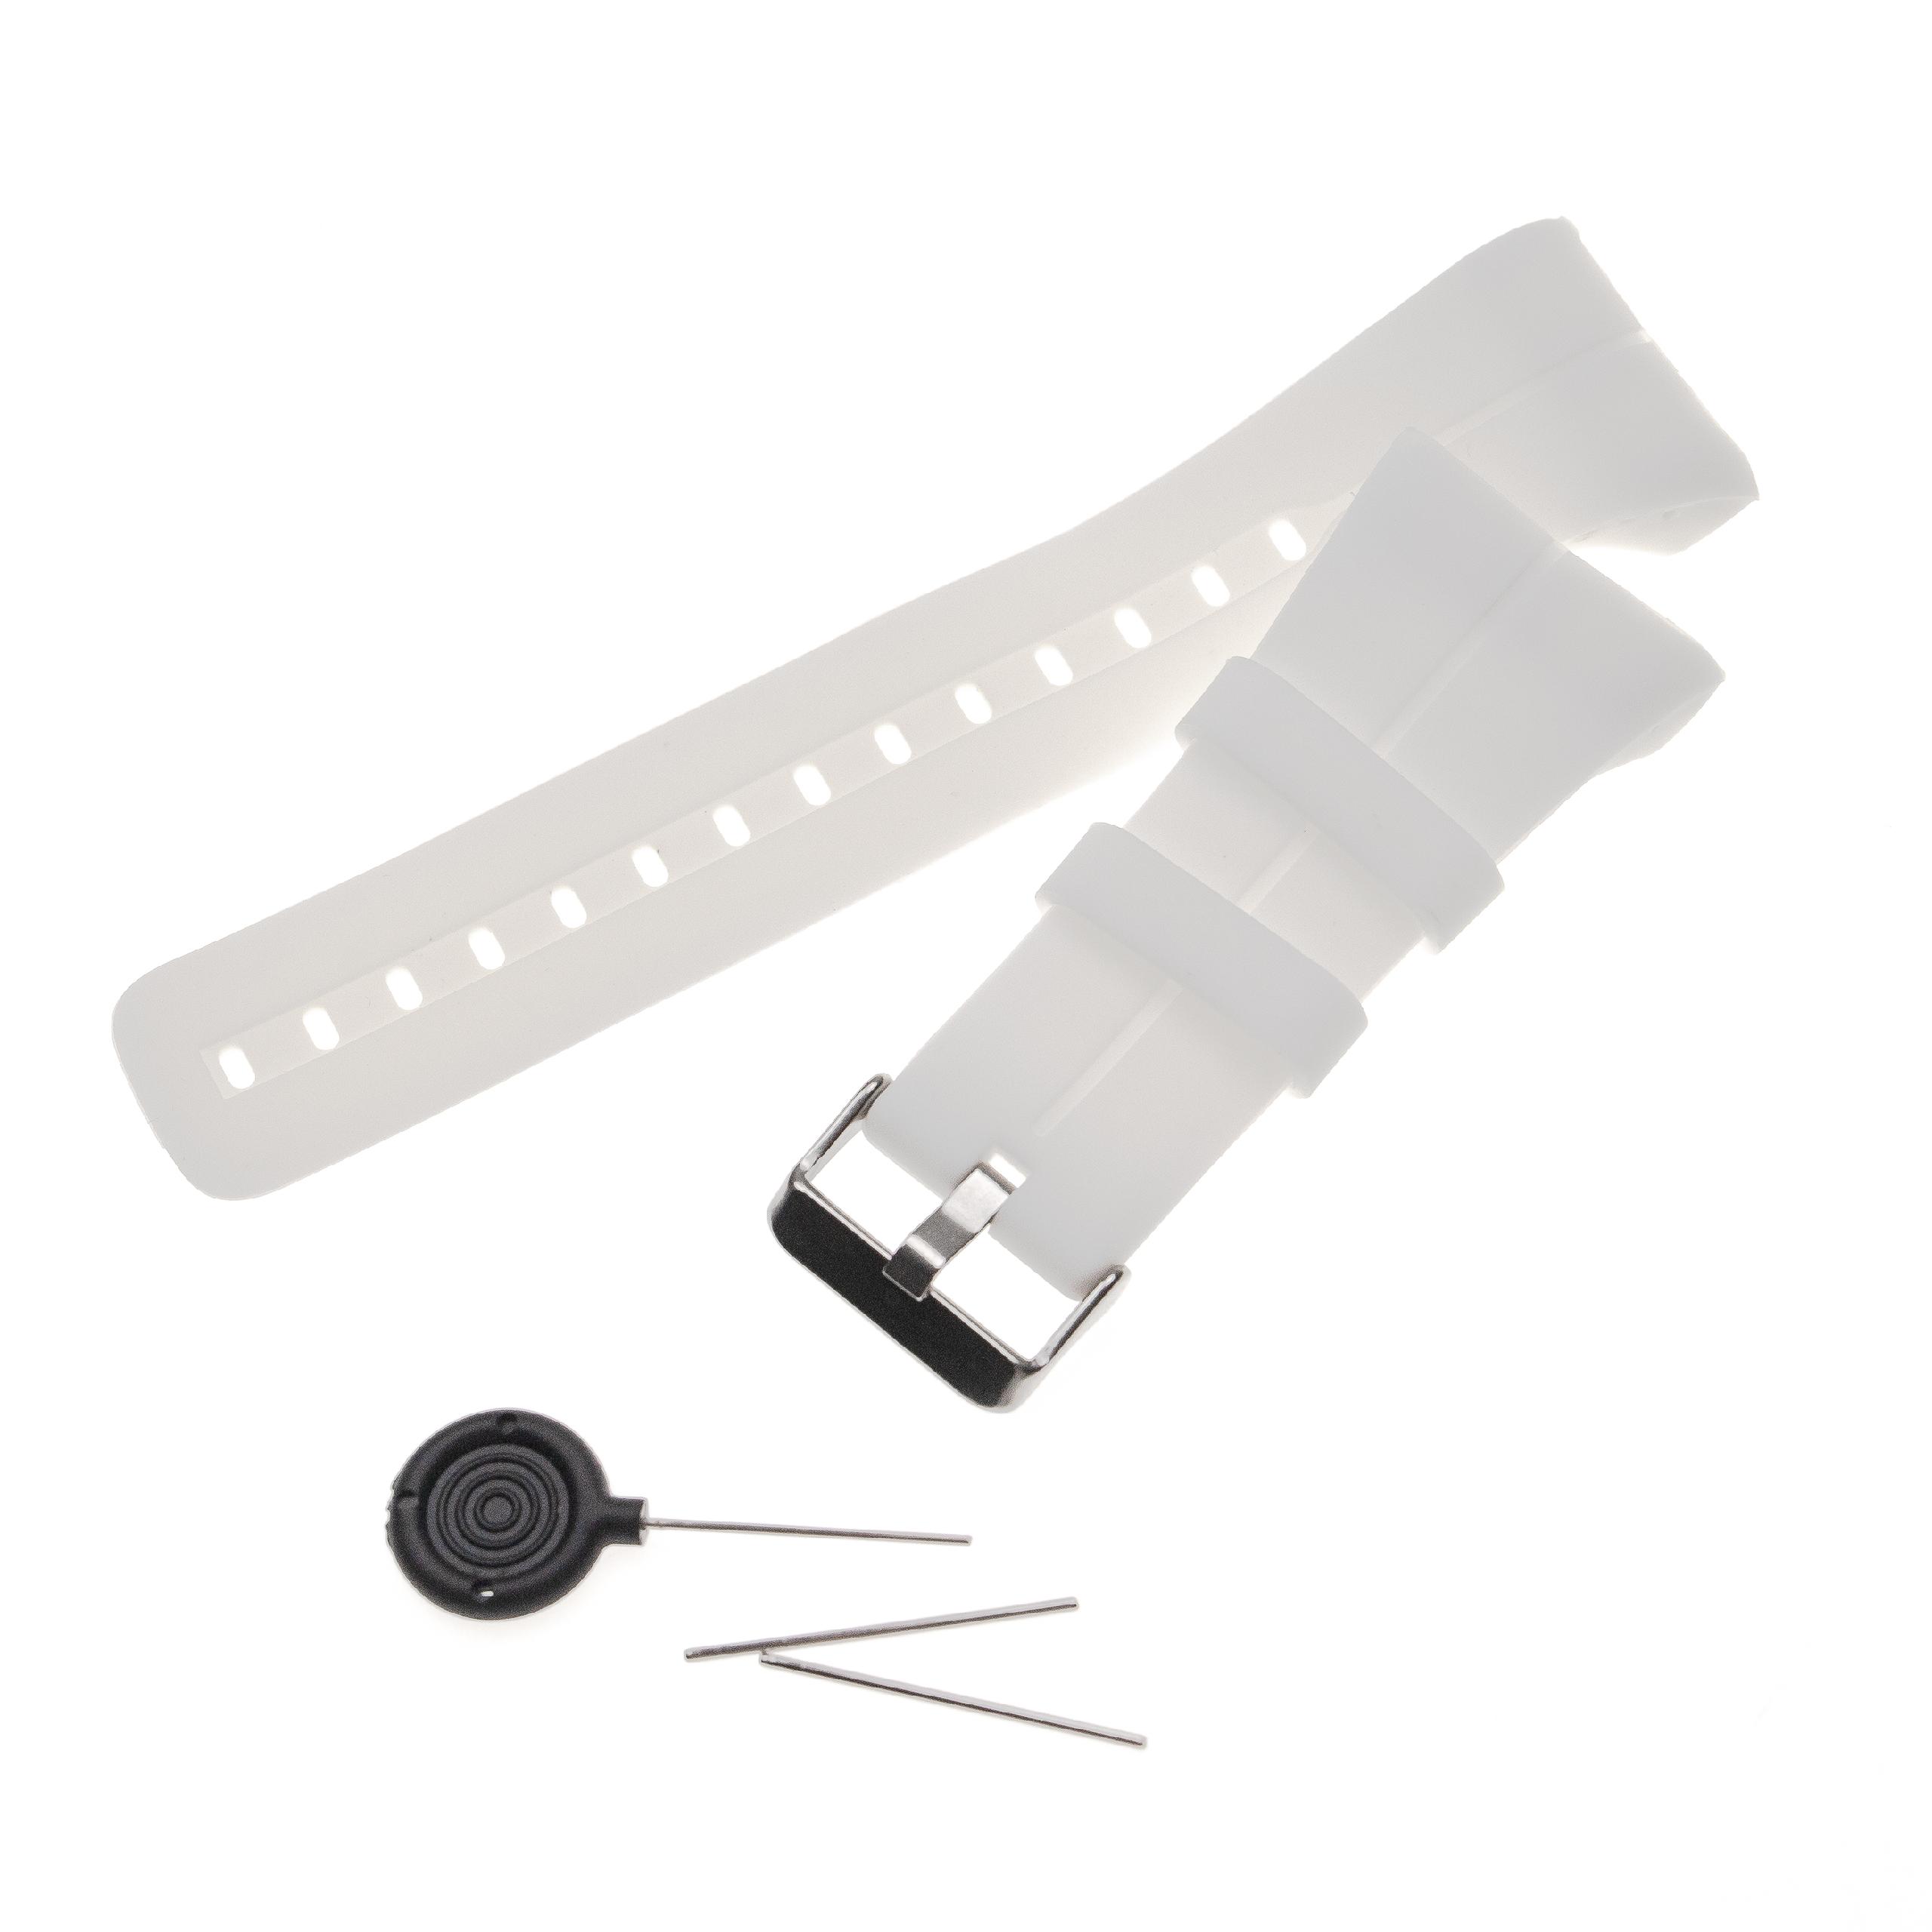 Bracelet pour montre intelligente Polar - 14,5 + 8,9 cm de long, 34mm de large, silicone, blanc